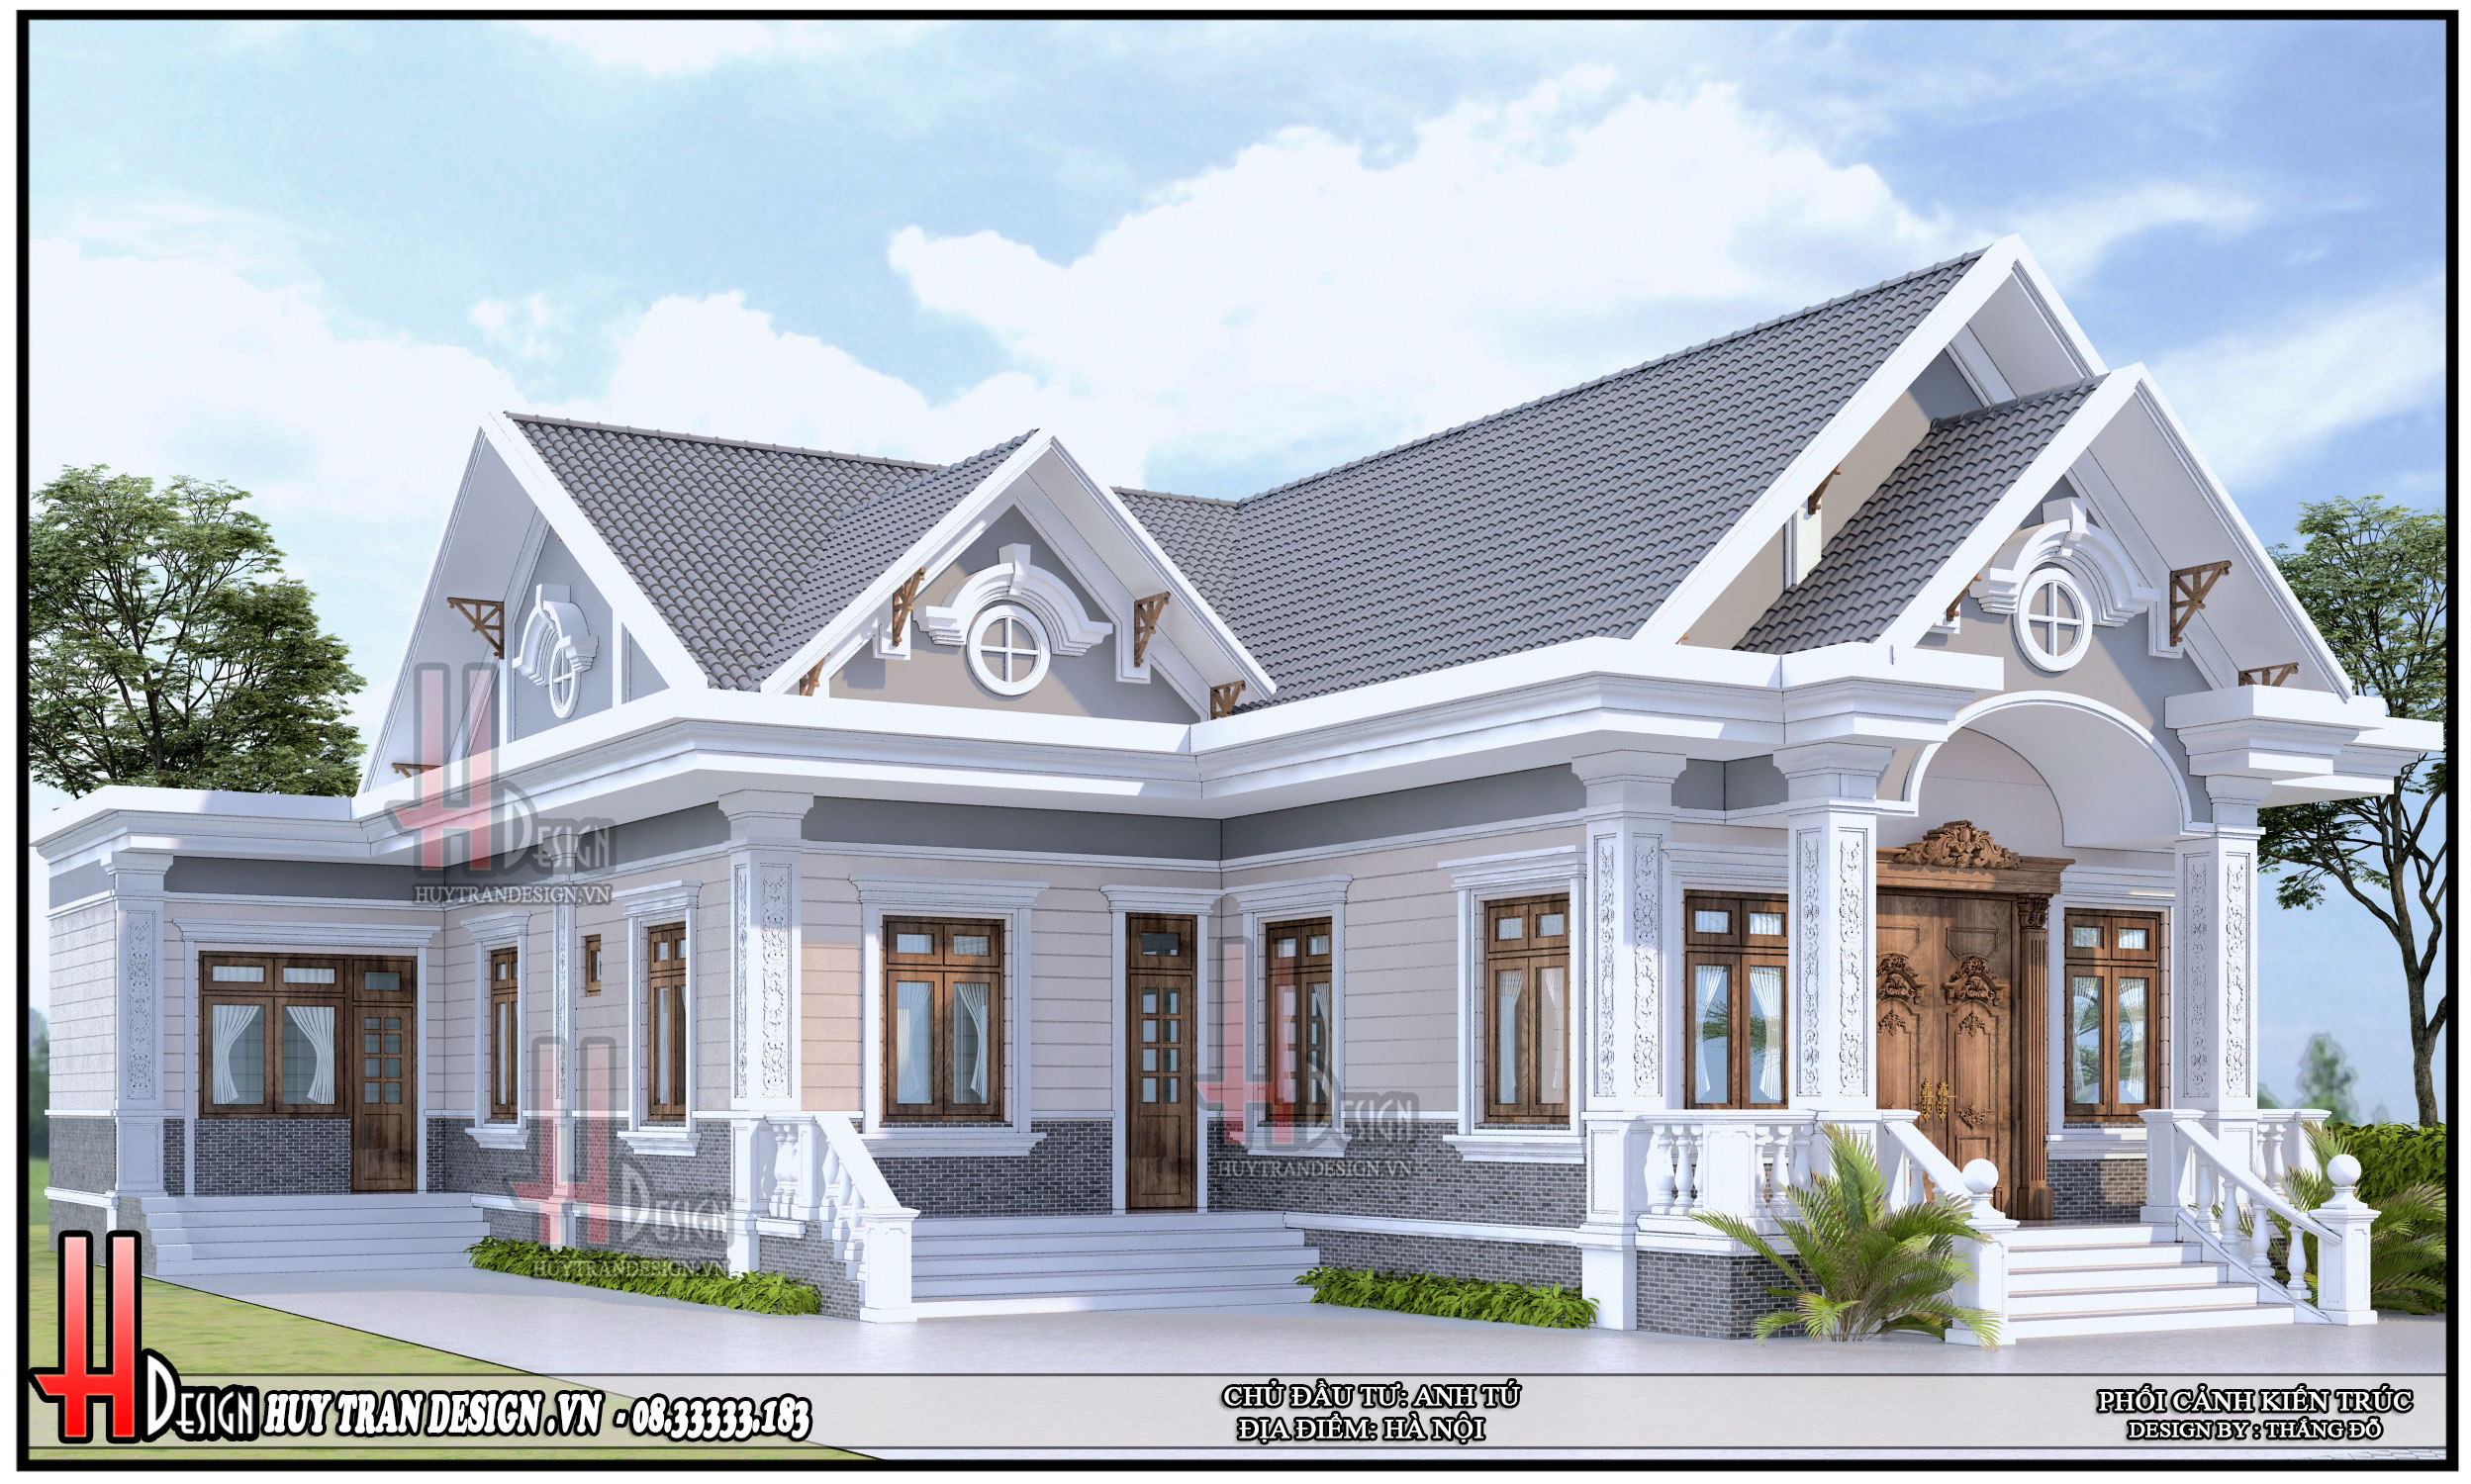 Thiết kế nhà đẹp cấp 4 mái thái hiện đại 8x13m phong cách mới 2016 anh Võng  Đồng Nai  NC4211015A  VinaTrends